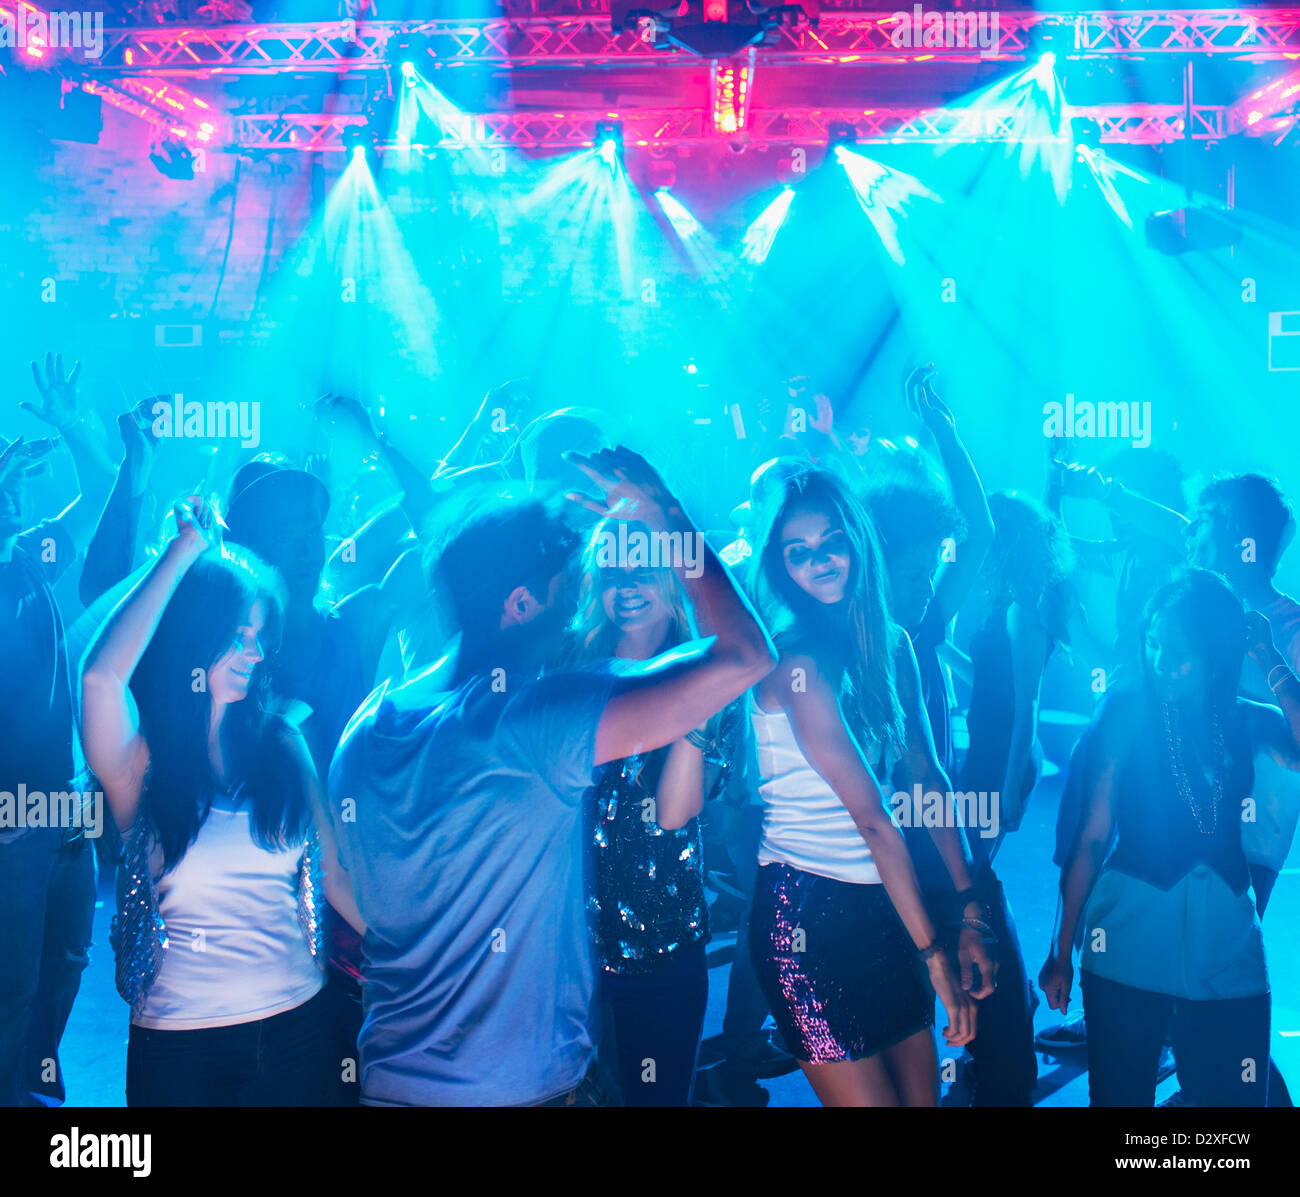 People dancing on dance floor of nightclub Stock Photo - Alamy